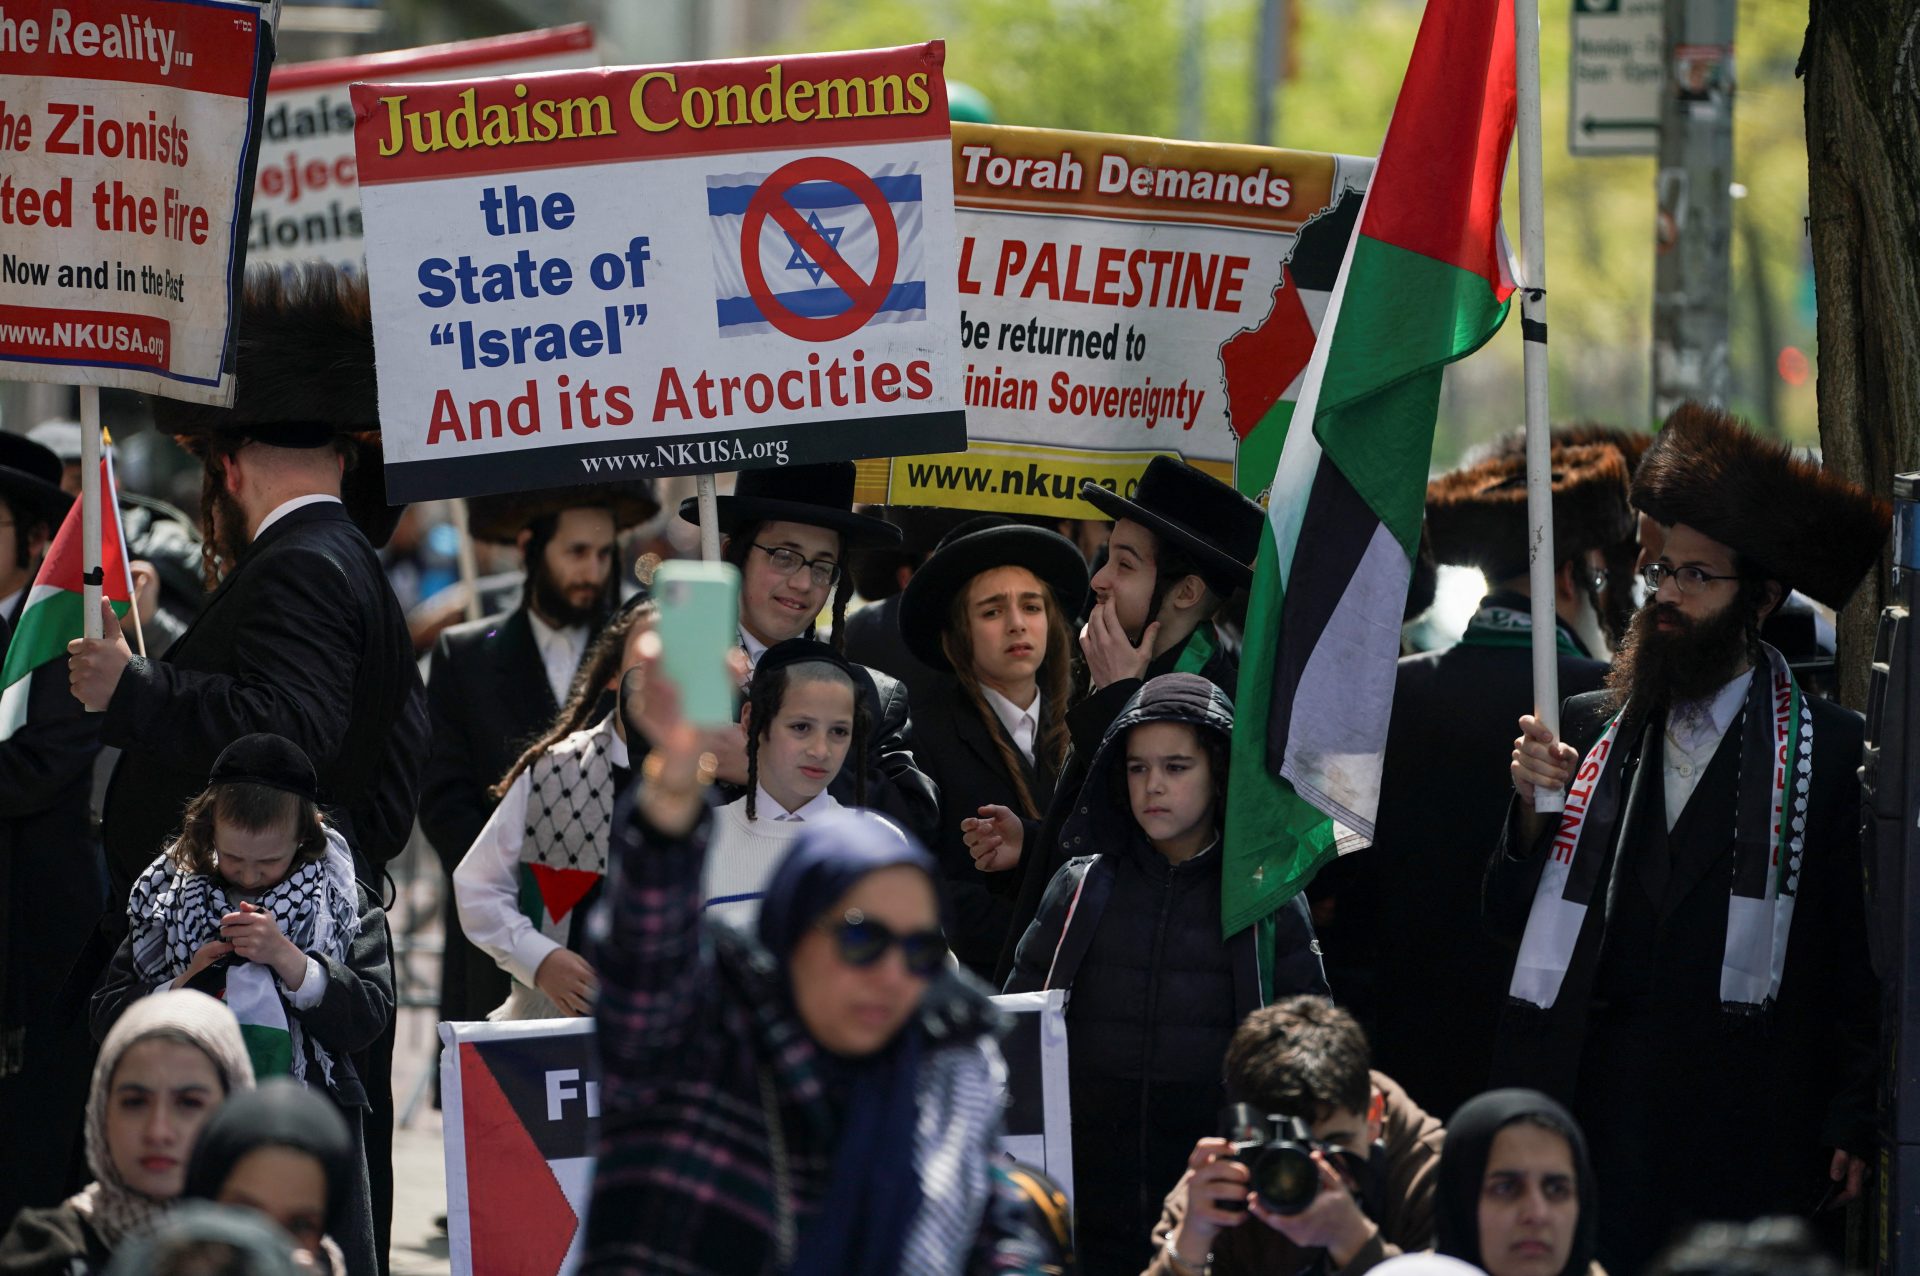 Universités US soutiennent Palestine - Entre révolte et désir de changement